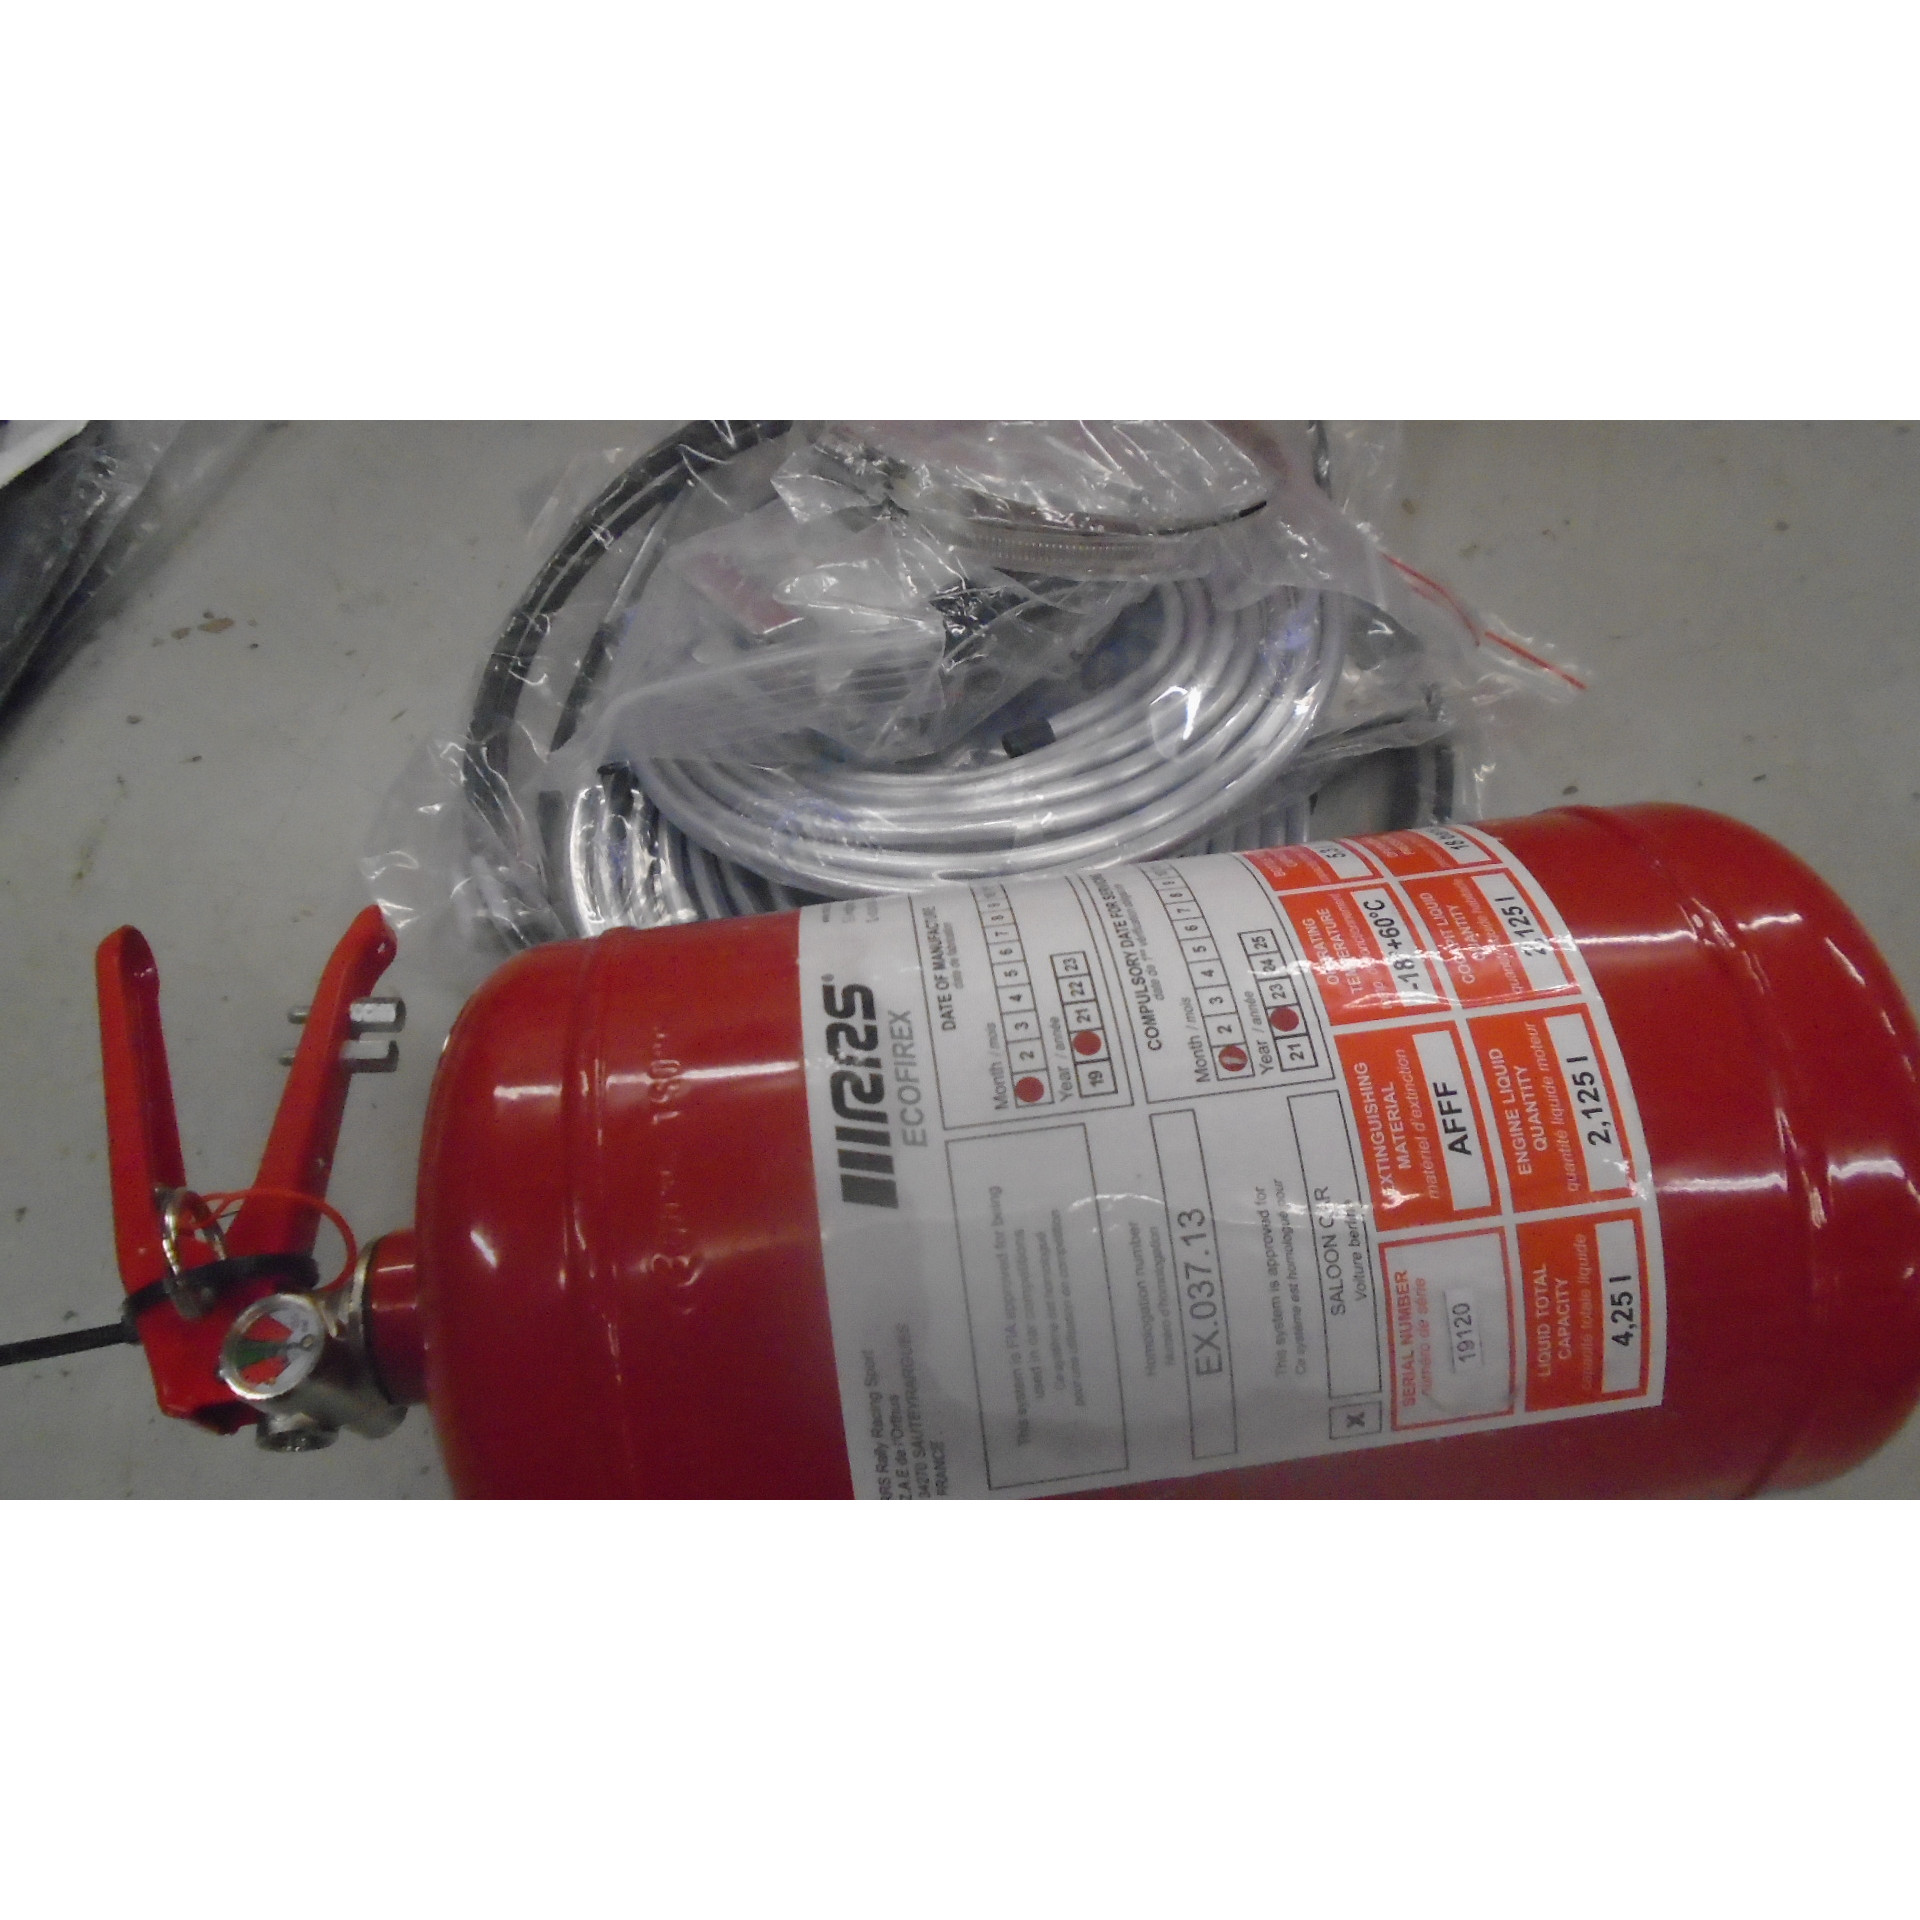 damaged fire extinguisher